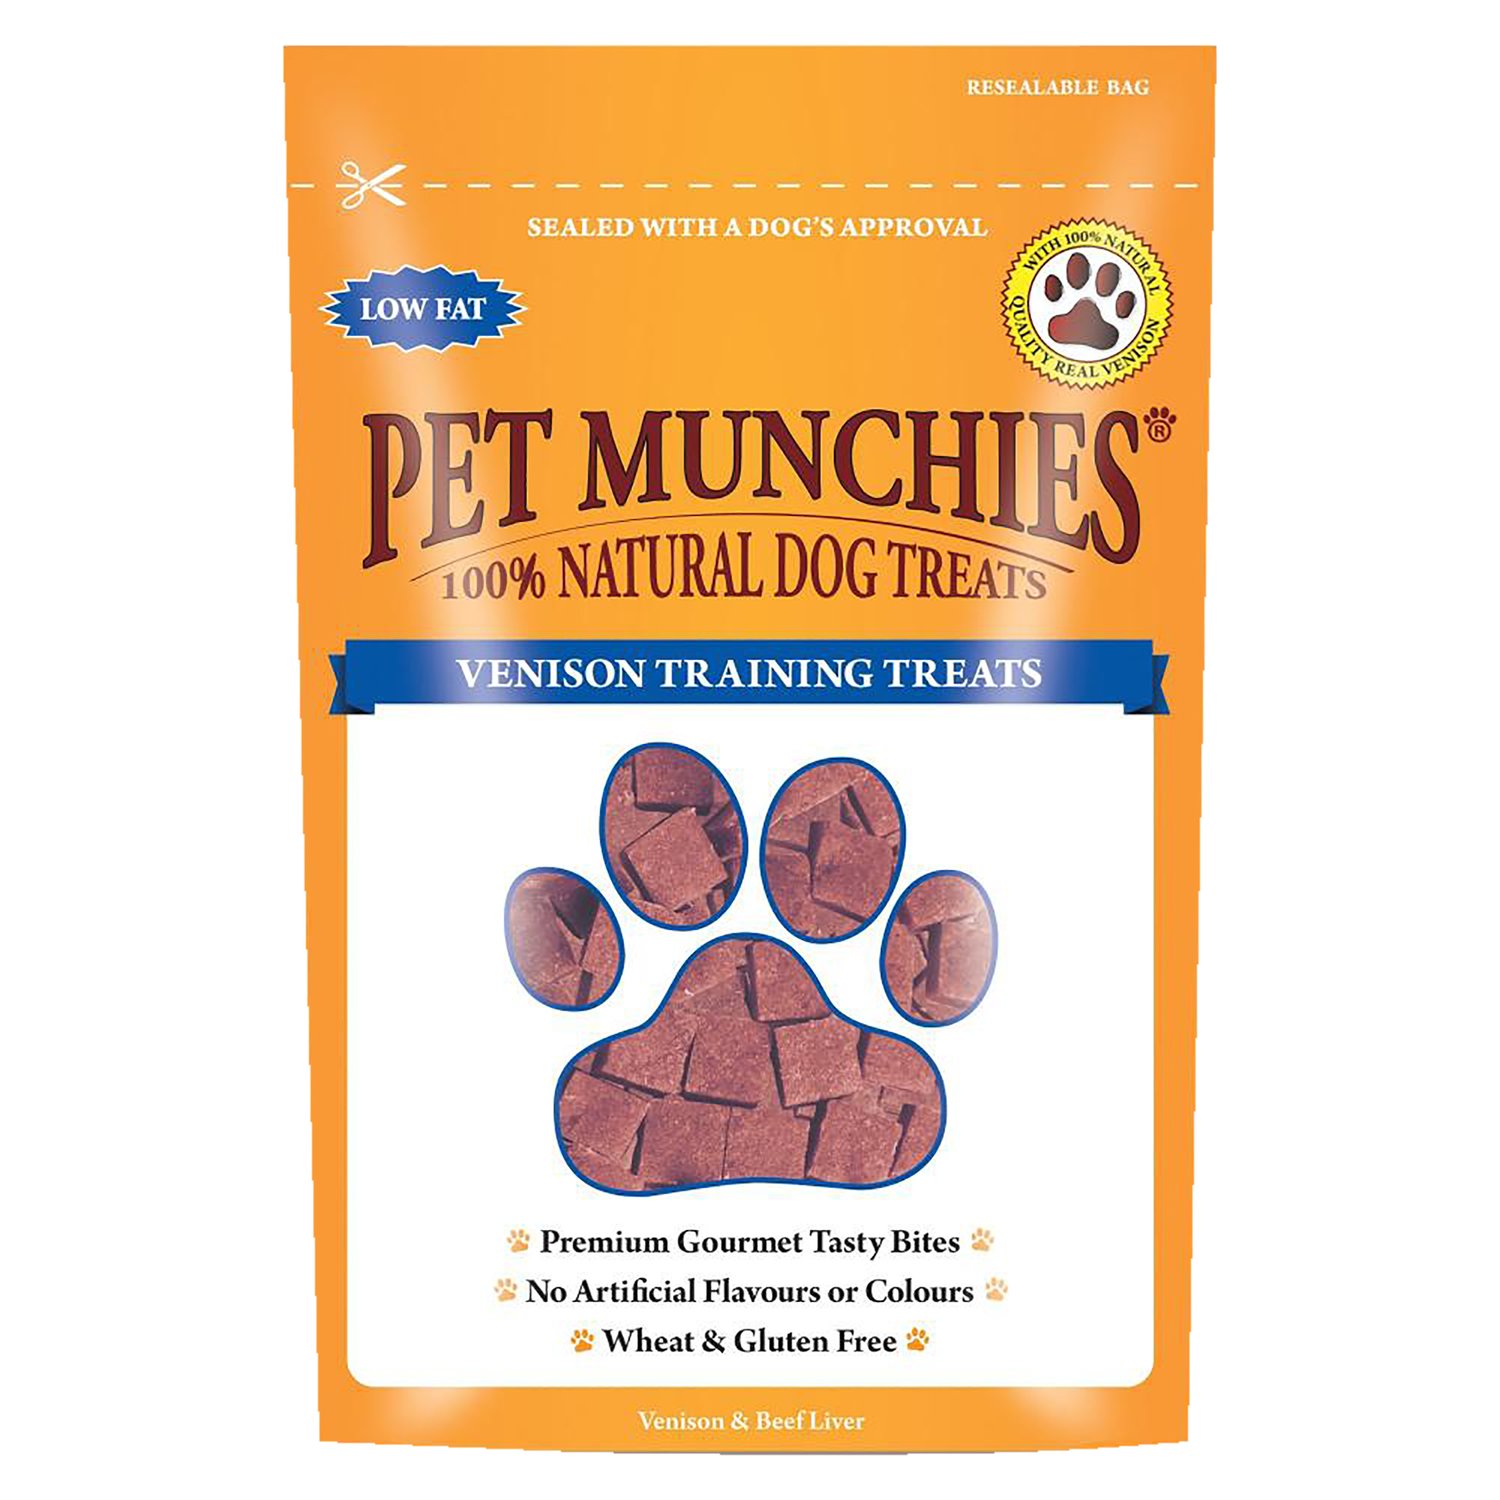 Pet munchies cat treats